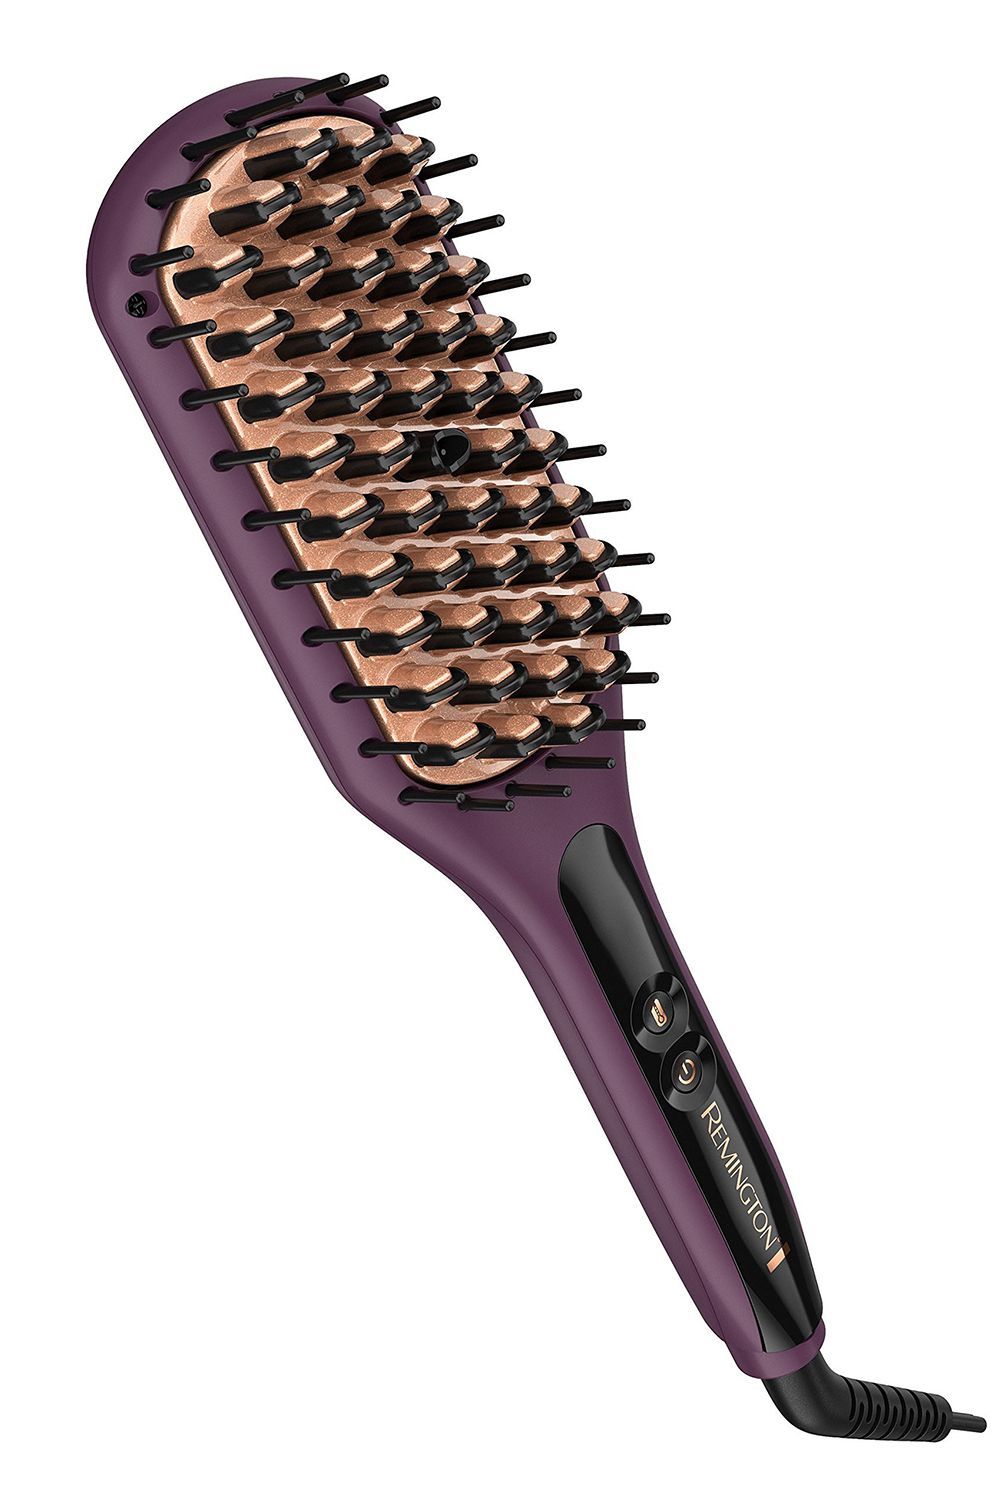 23 Best Hair Straightener Brushes for All Hair Types of 2023